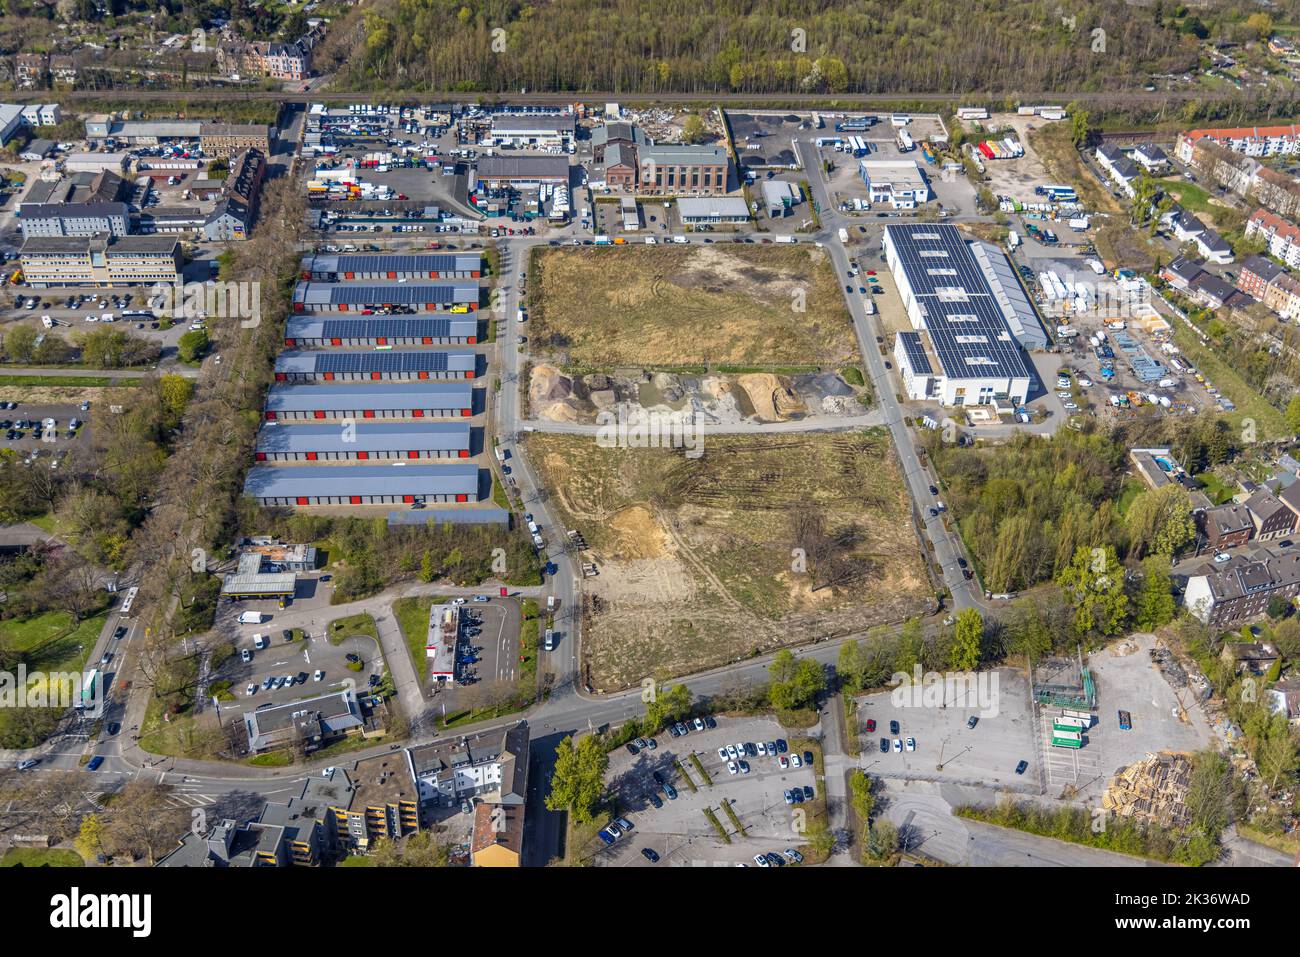 Aerial view, X-Trans GmbH Garage Park and Mezken GmbH with solar roof, Zechenstraße, Rotthausen, Gelsenkirchen, Ruhr Area, North Rhine-Westphalia, Ger Stock Photo